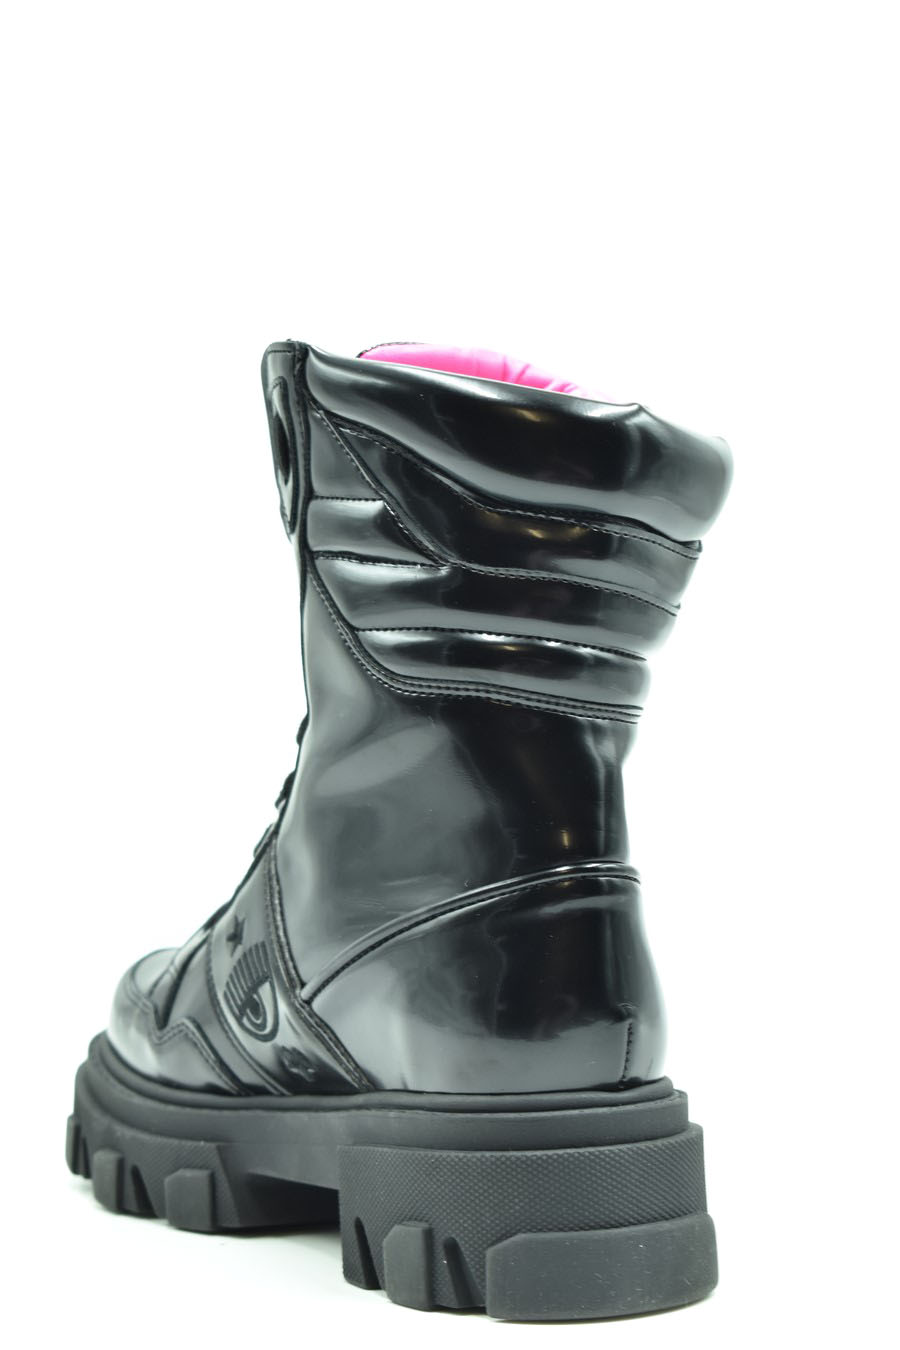 CHIARA FERRAGNI Boots | ViganoBoutique.com